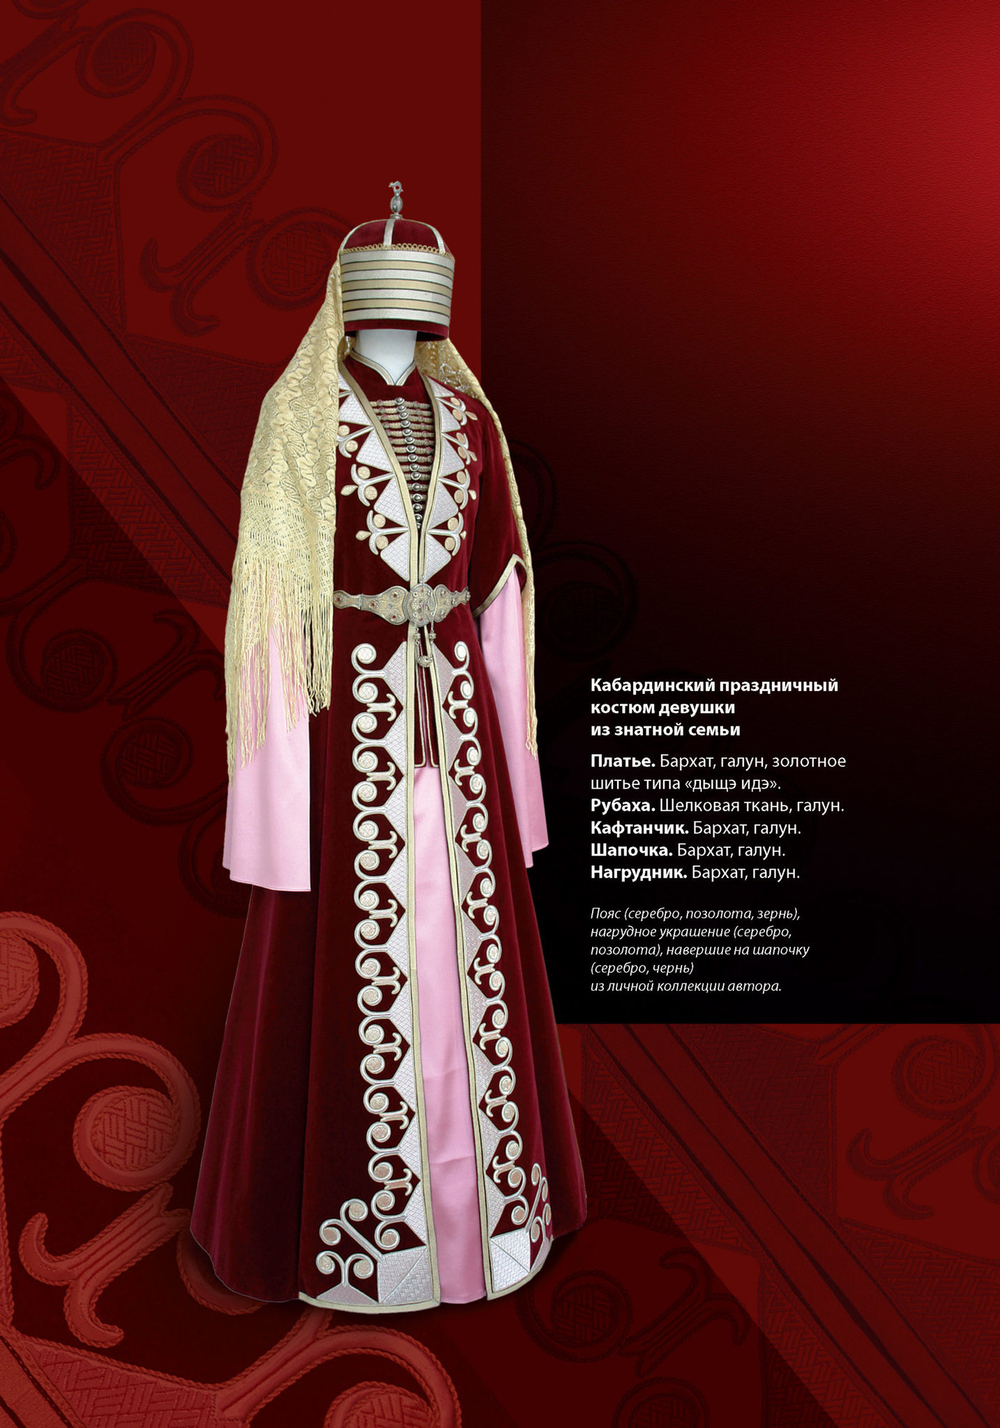 Мастерская национального костюма Мадины Хацуковой